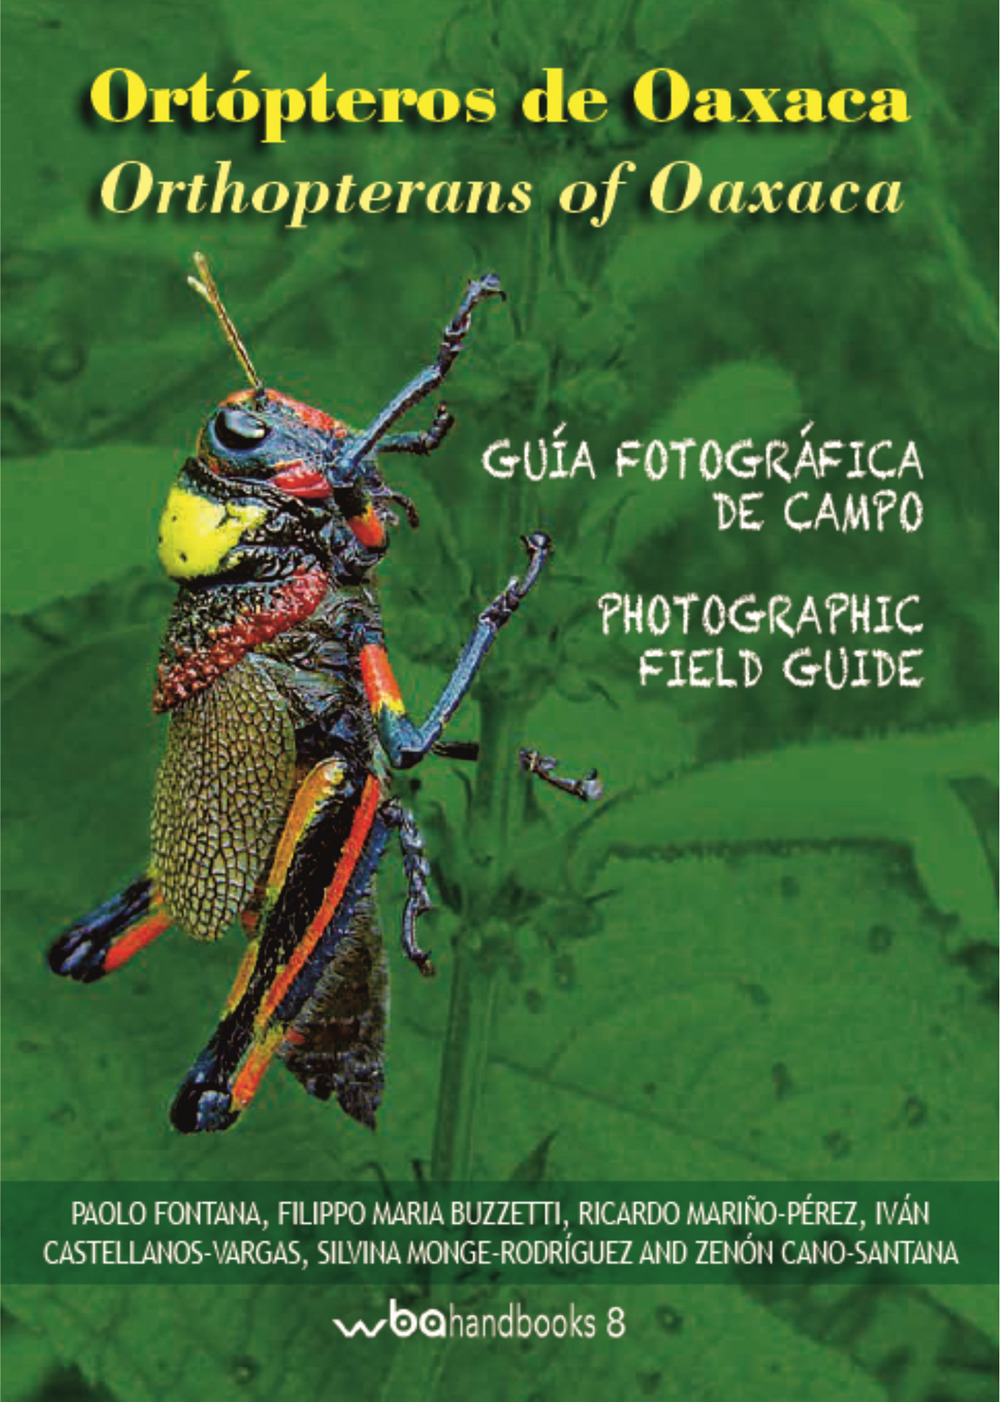 Ortopteros de Oaxaca. Fotografica de campo-Orthopterans of Oaxaca. Photographic field guide. Ediz. illustrata